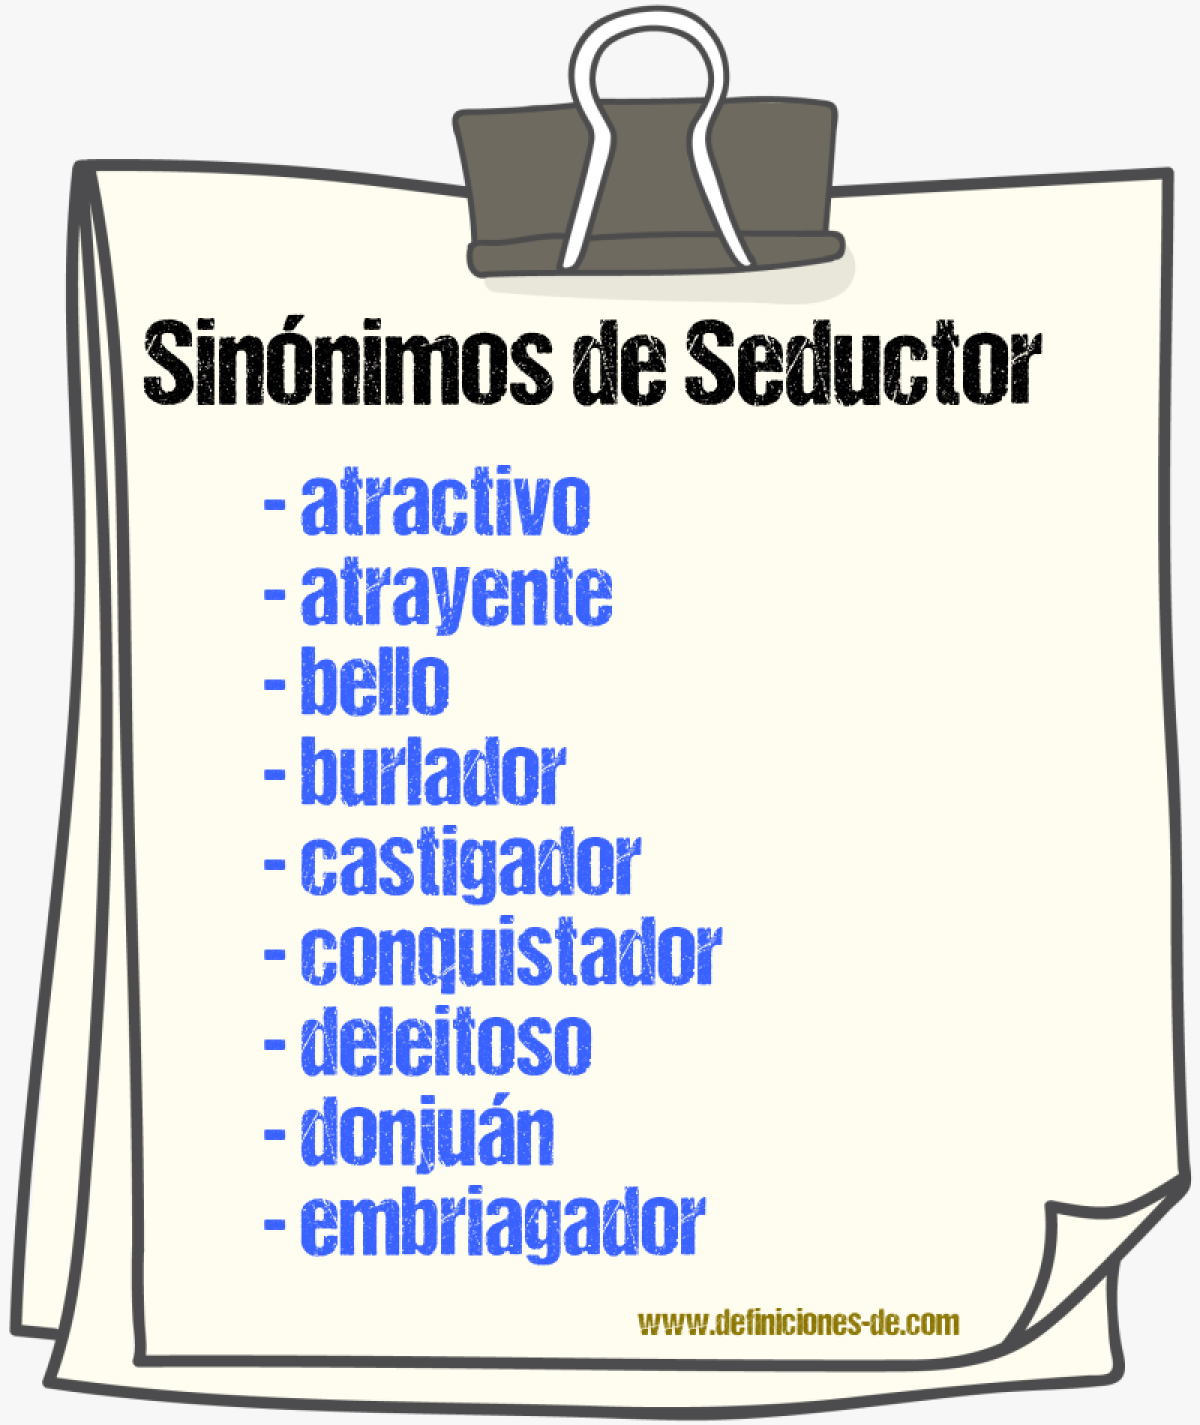 Sinónimos de seductor